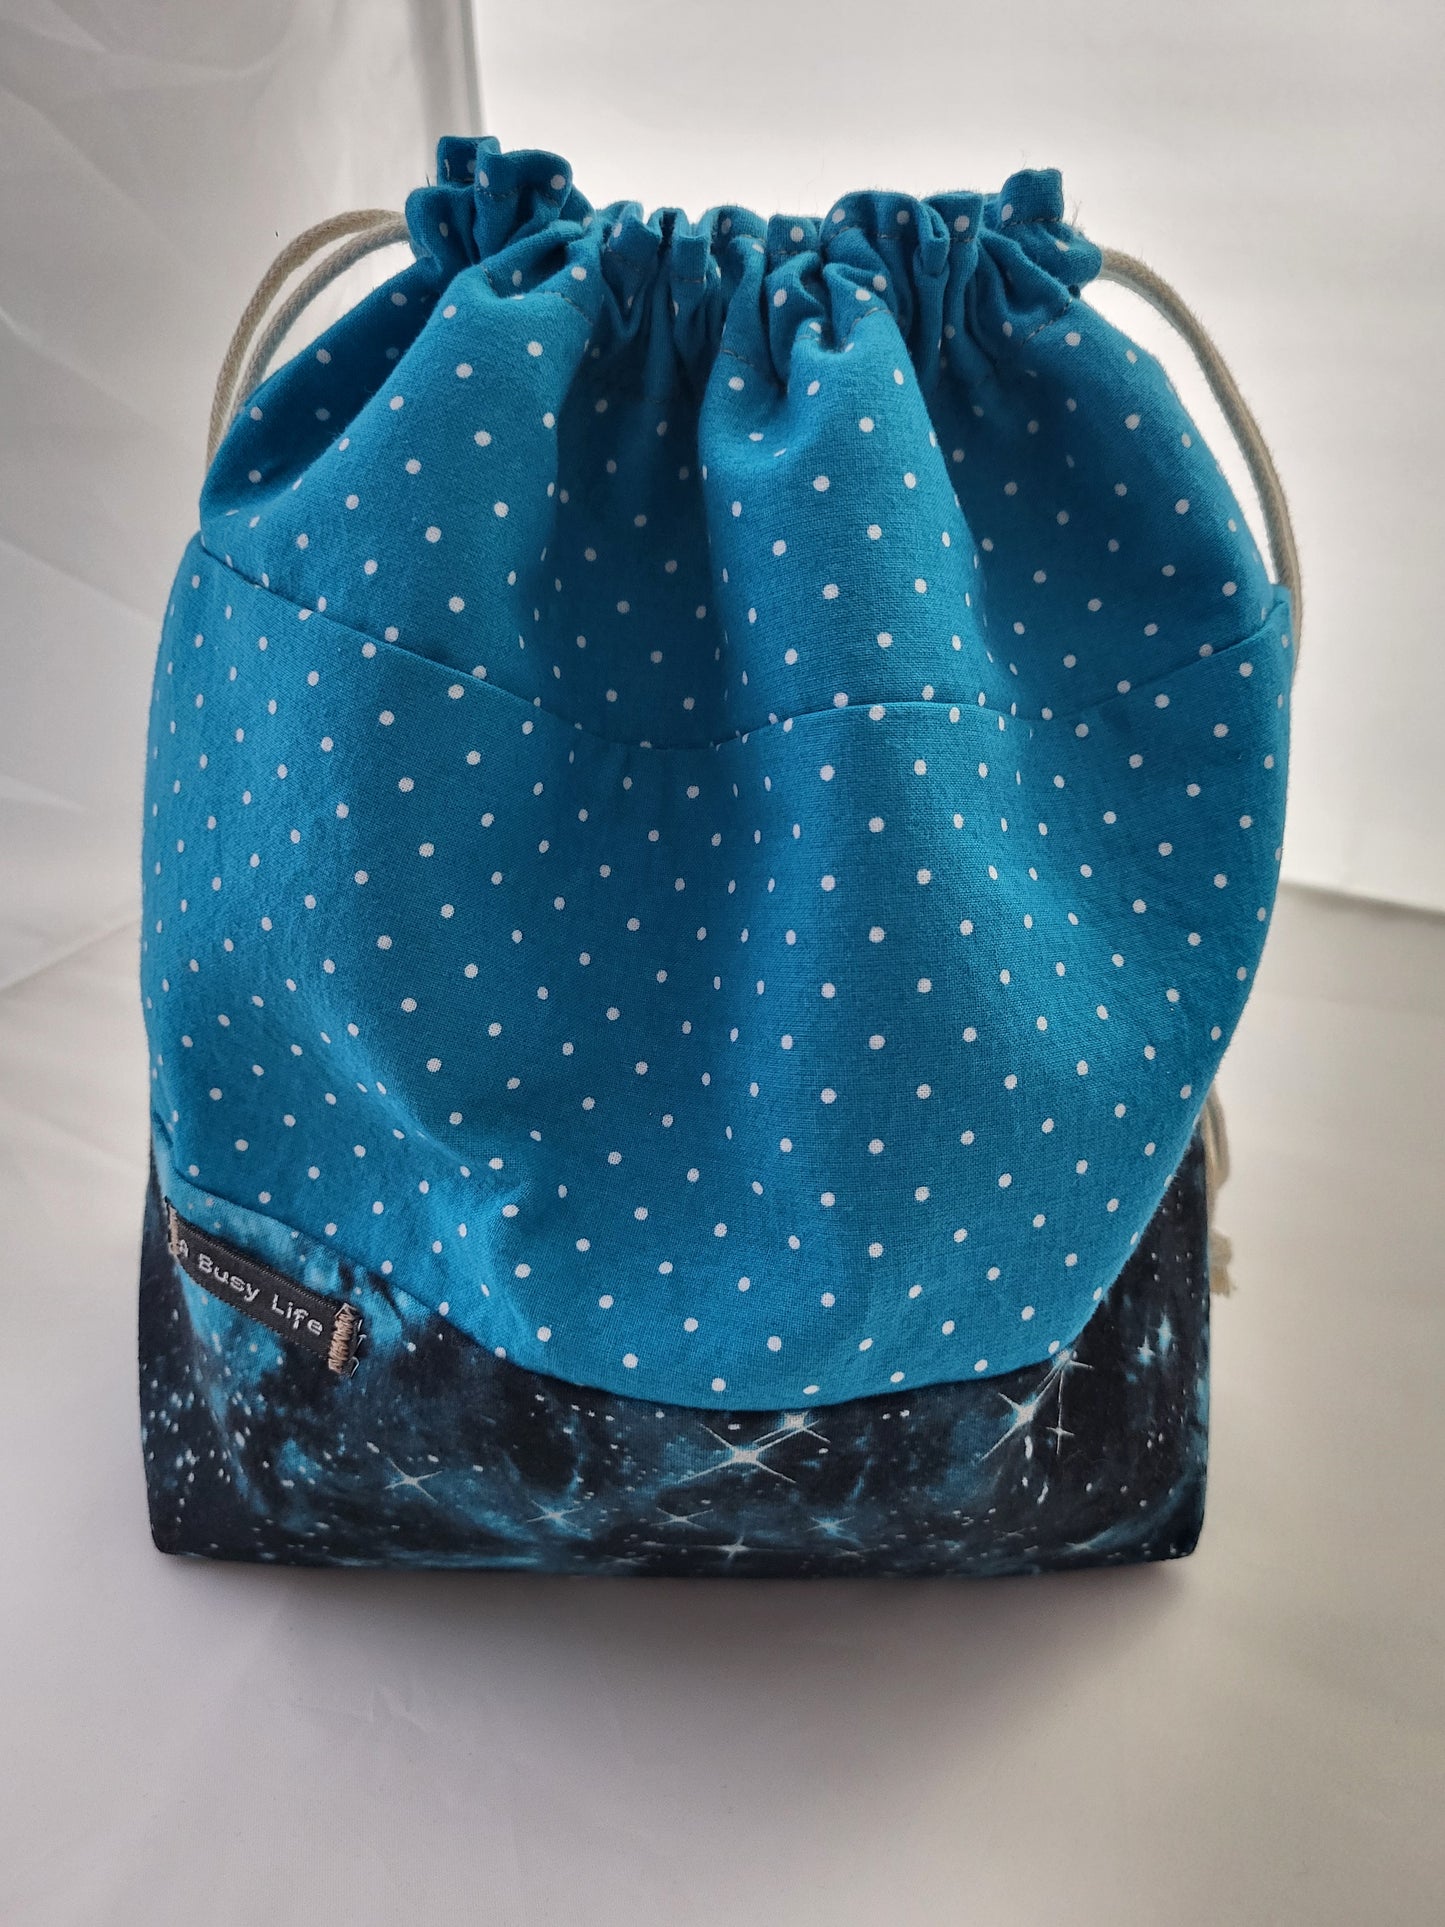 Starry polka dots drawstring Sock Sack, Drawstring bag, small project bag, small storage bag